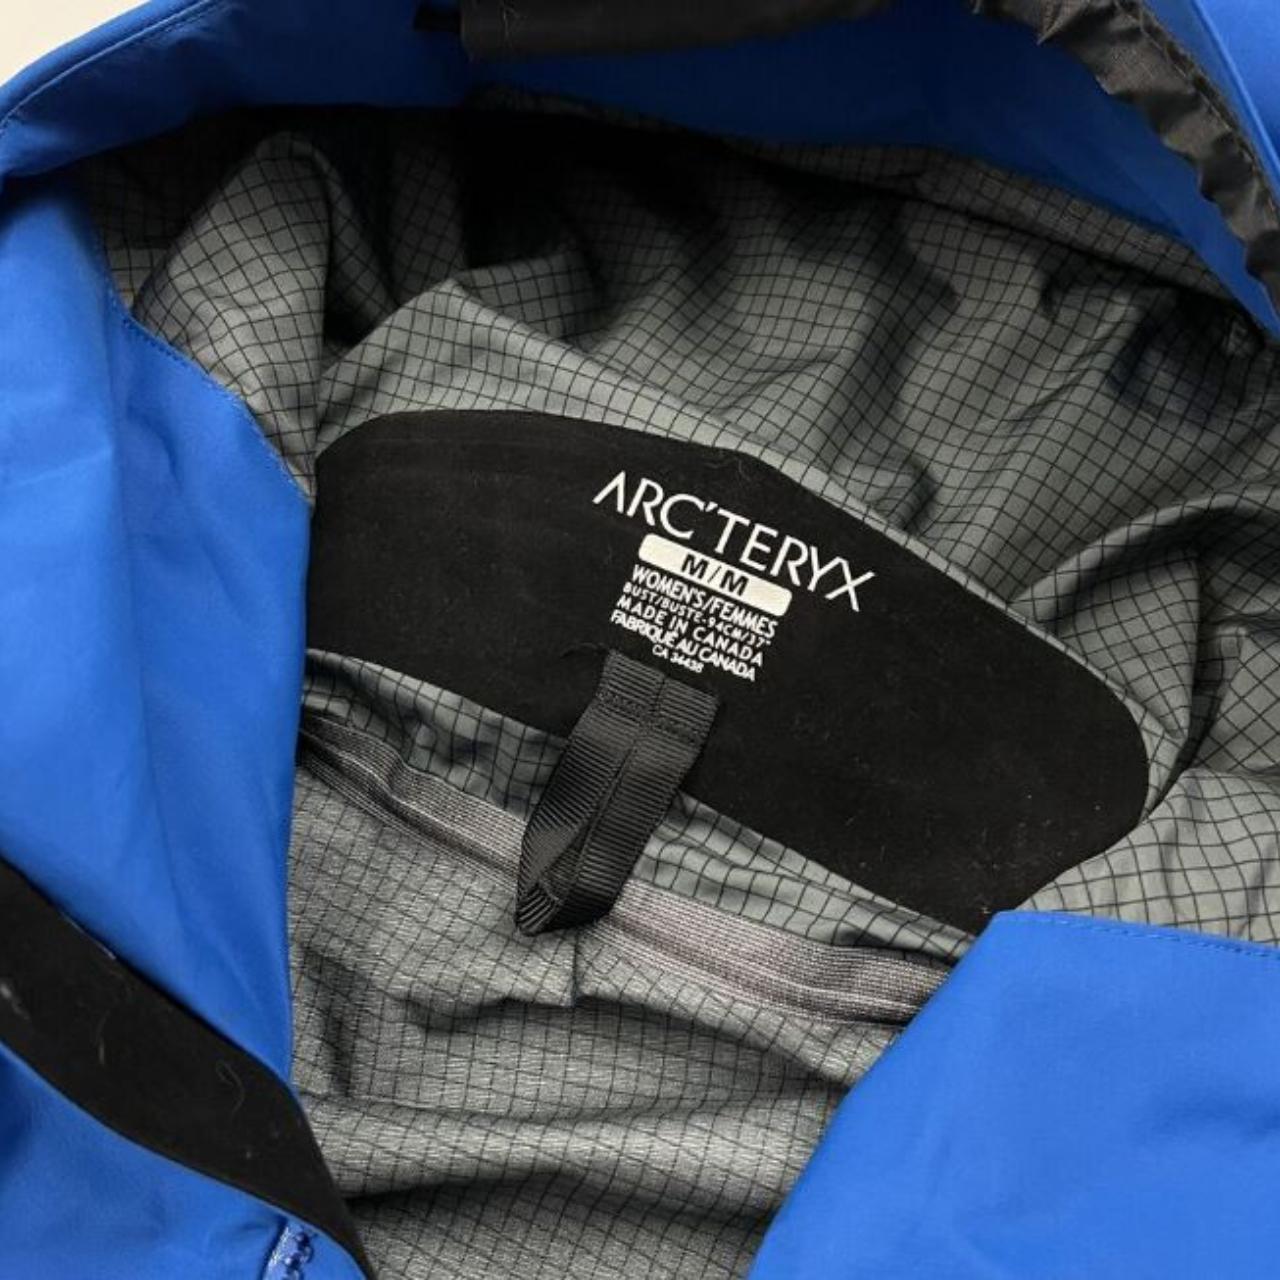 Arc-teryx men's jacket Arc’teryx Alpha SV Rain Jacket. - Depop